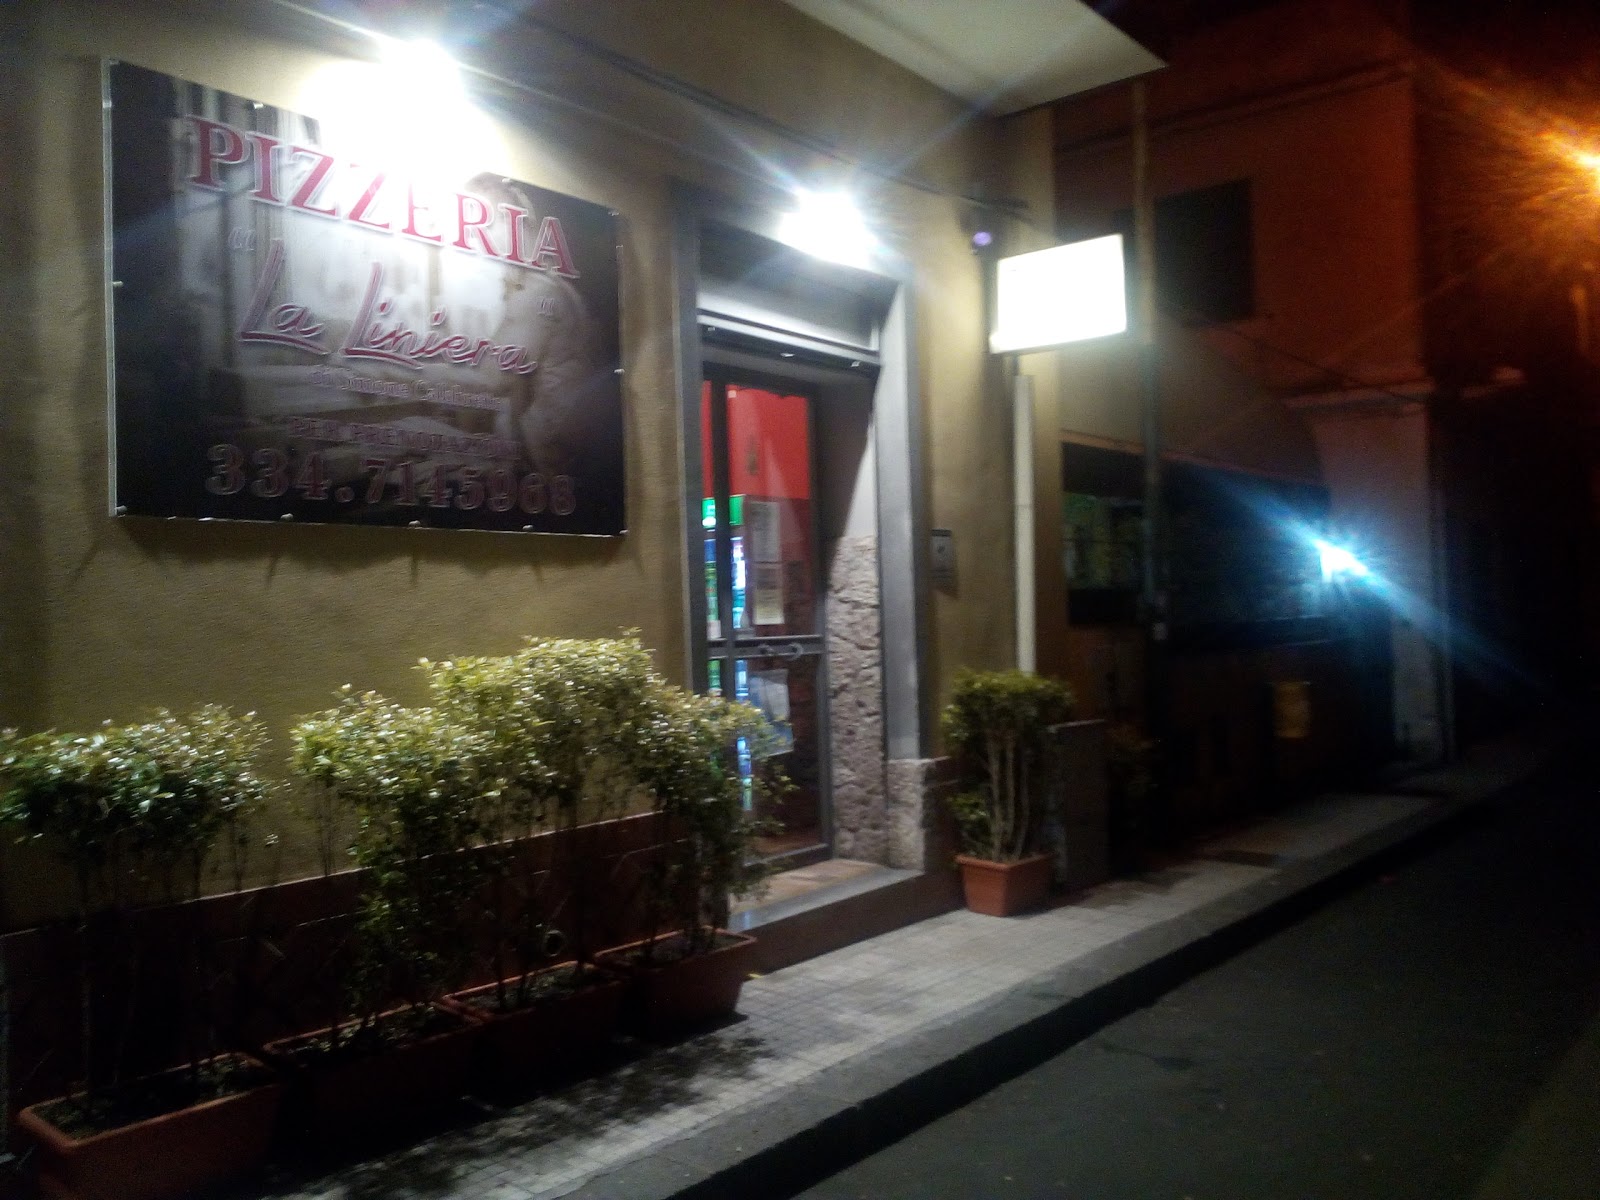 Foto di Pizzeria La Liniera